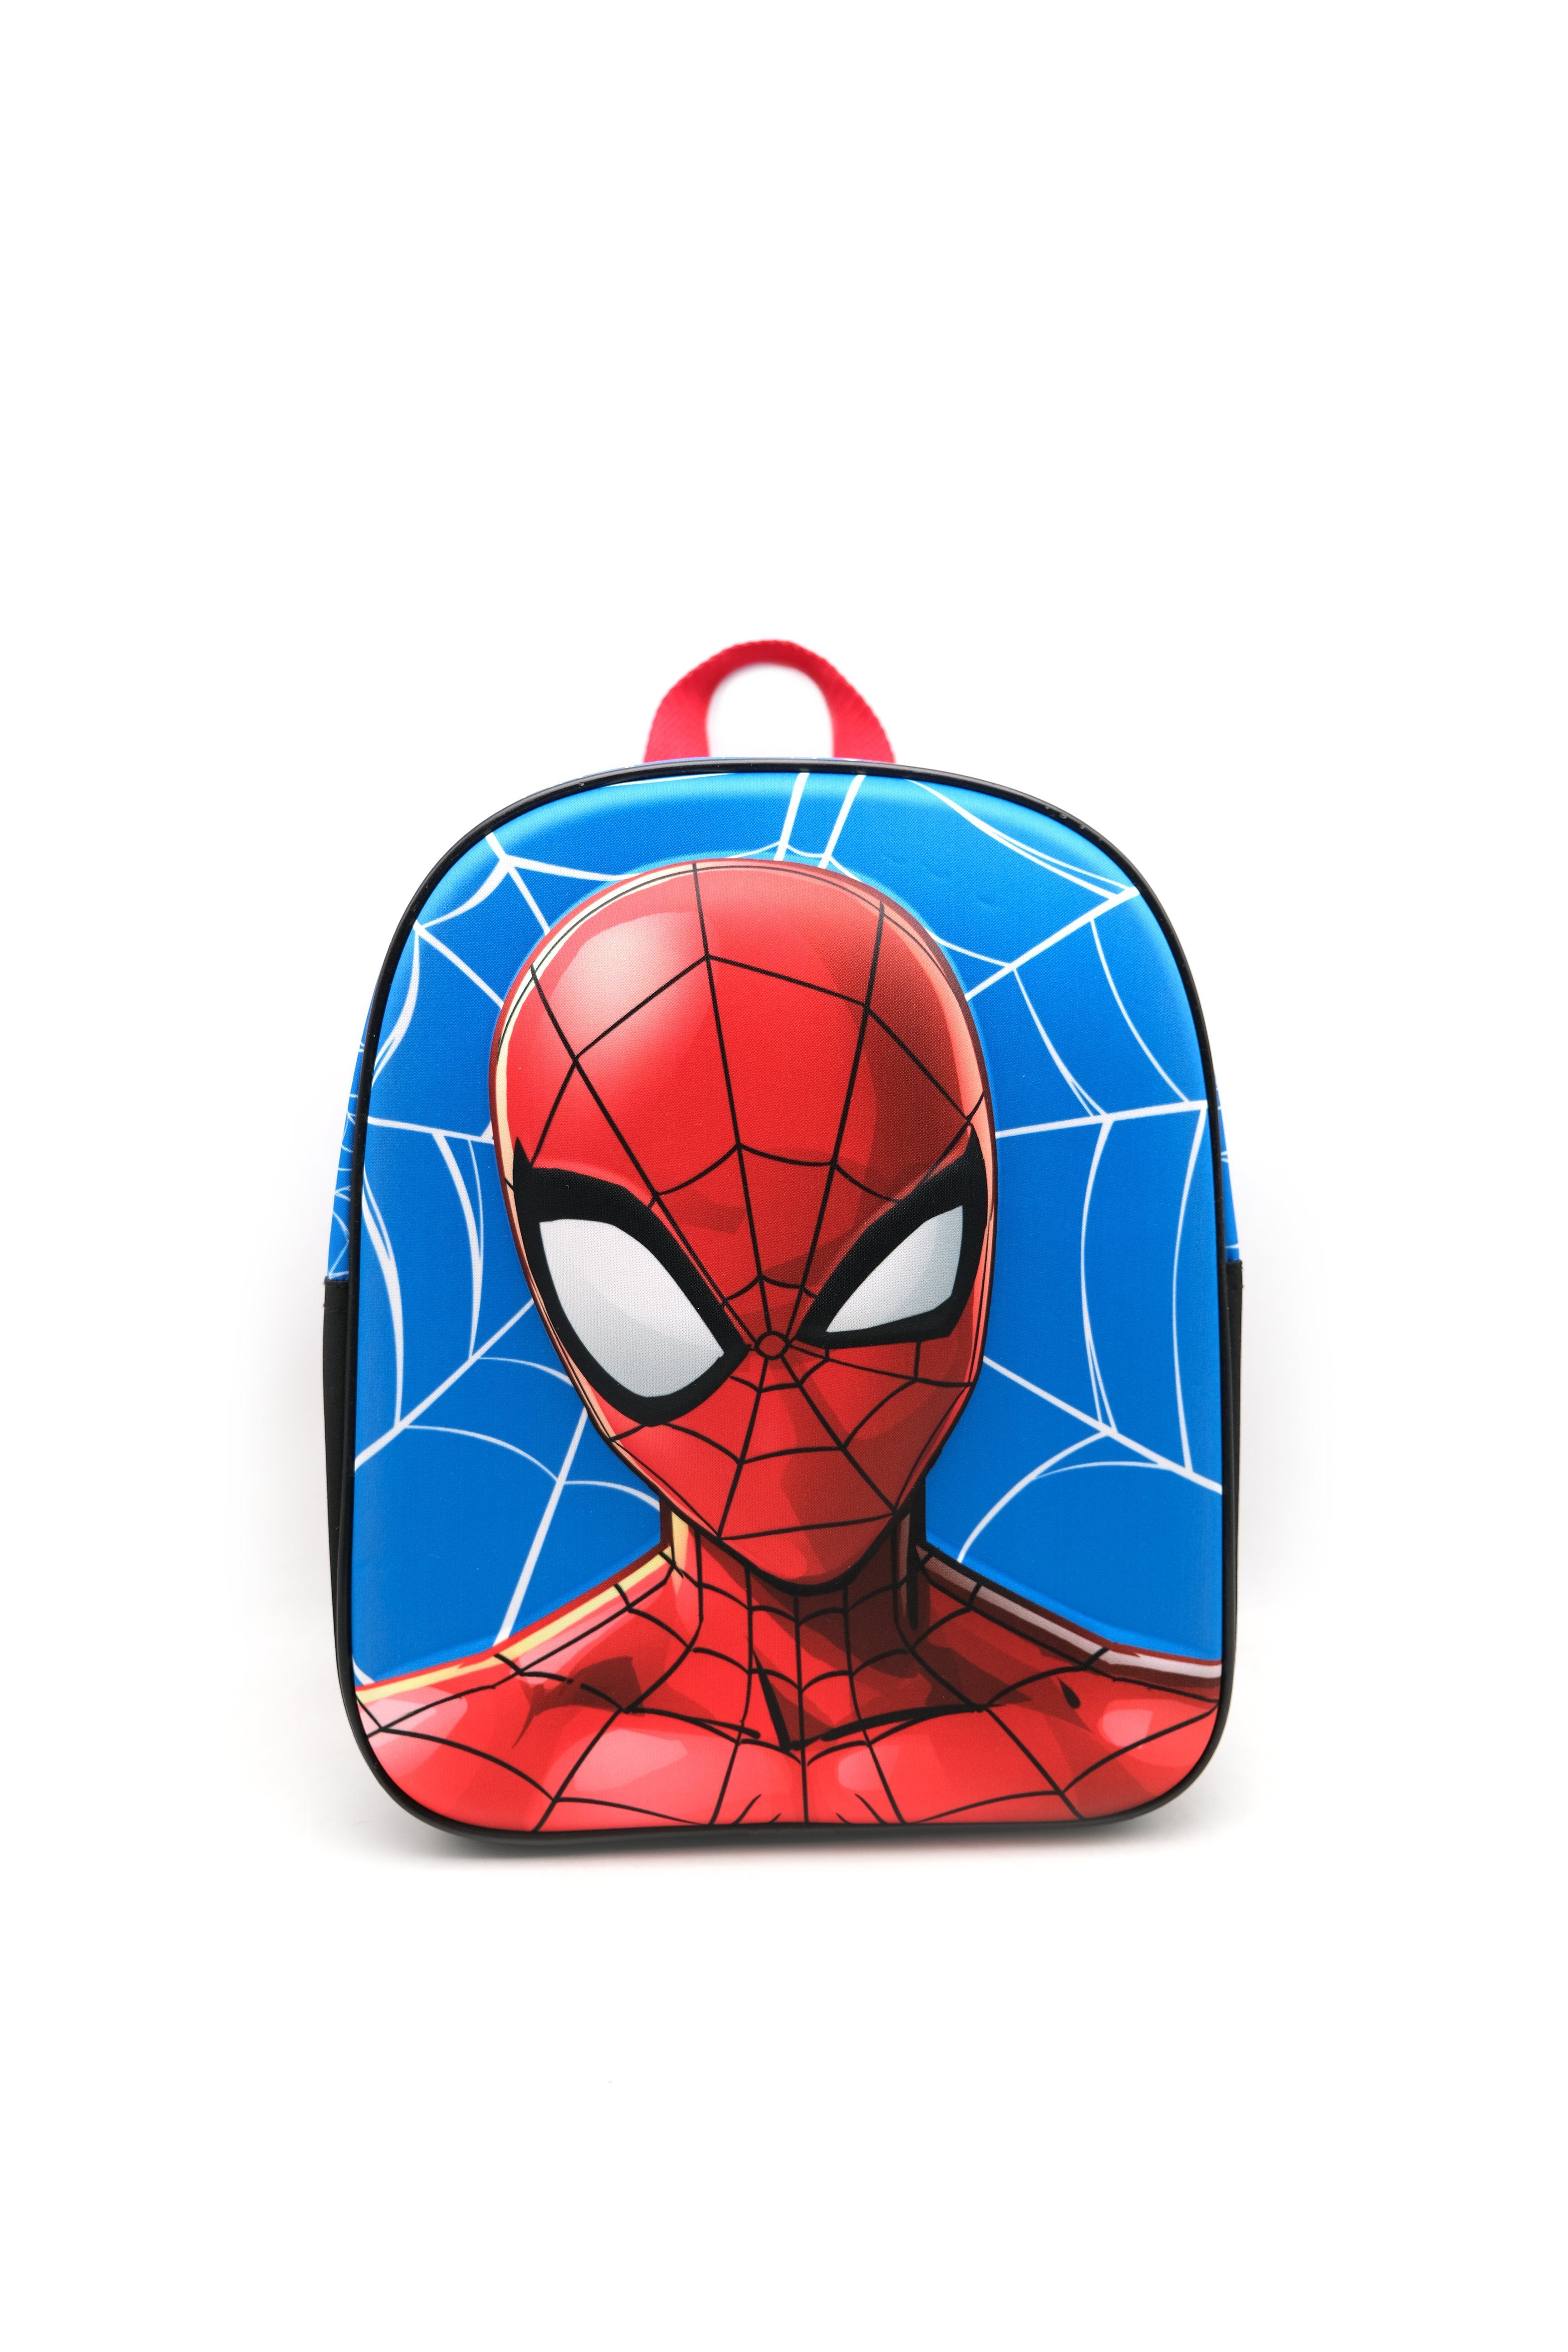 Spiderman 30cm Schultasche EVA Tasche "Spiderman" Kinderrucksack Kleinkinderrucksack